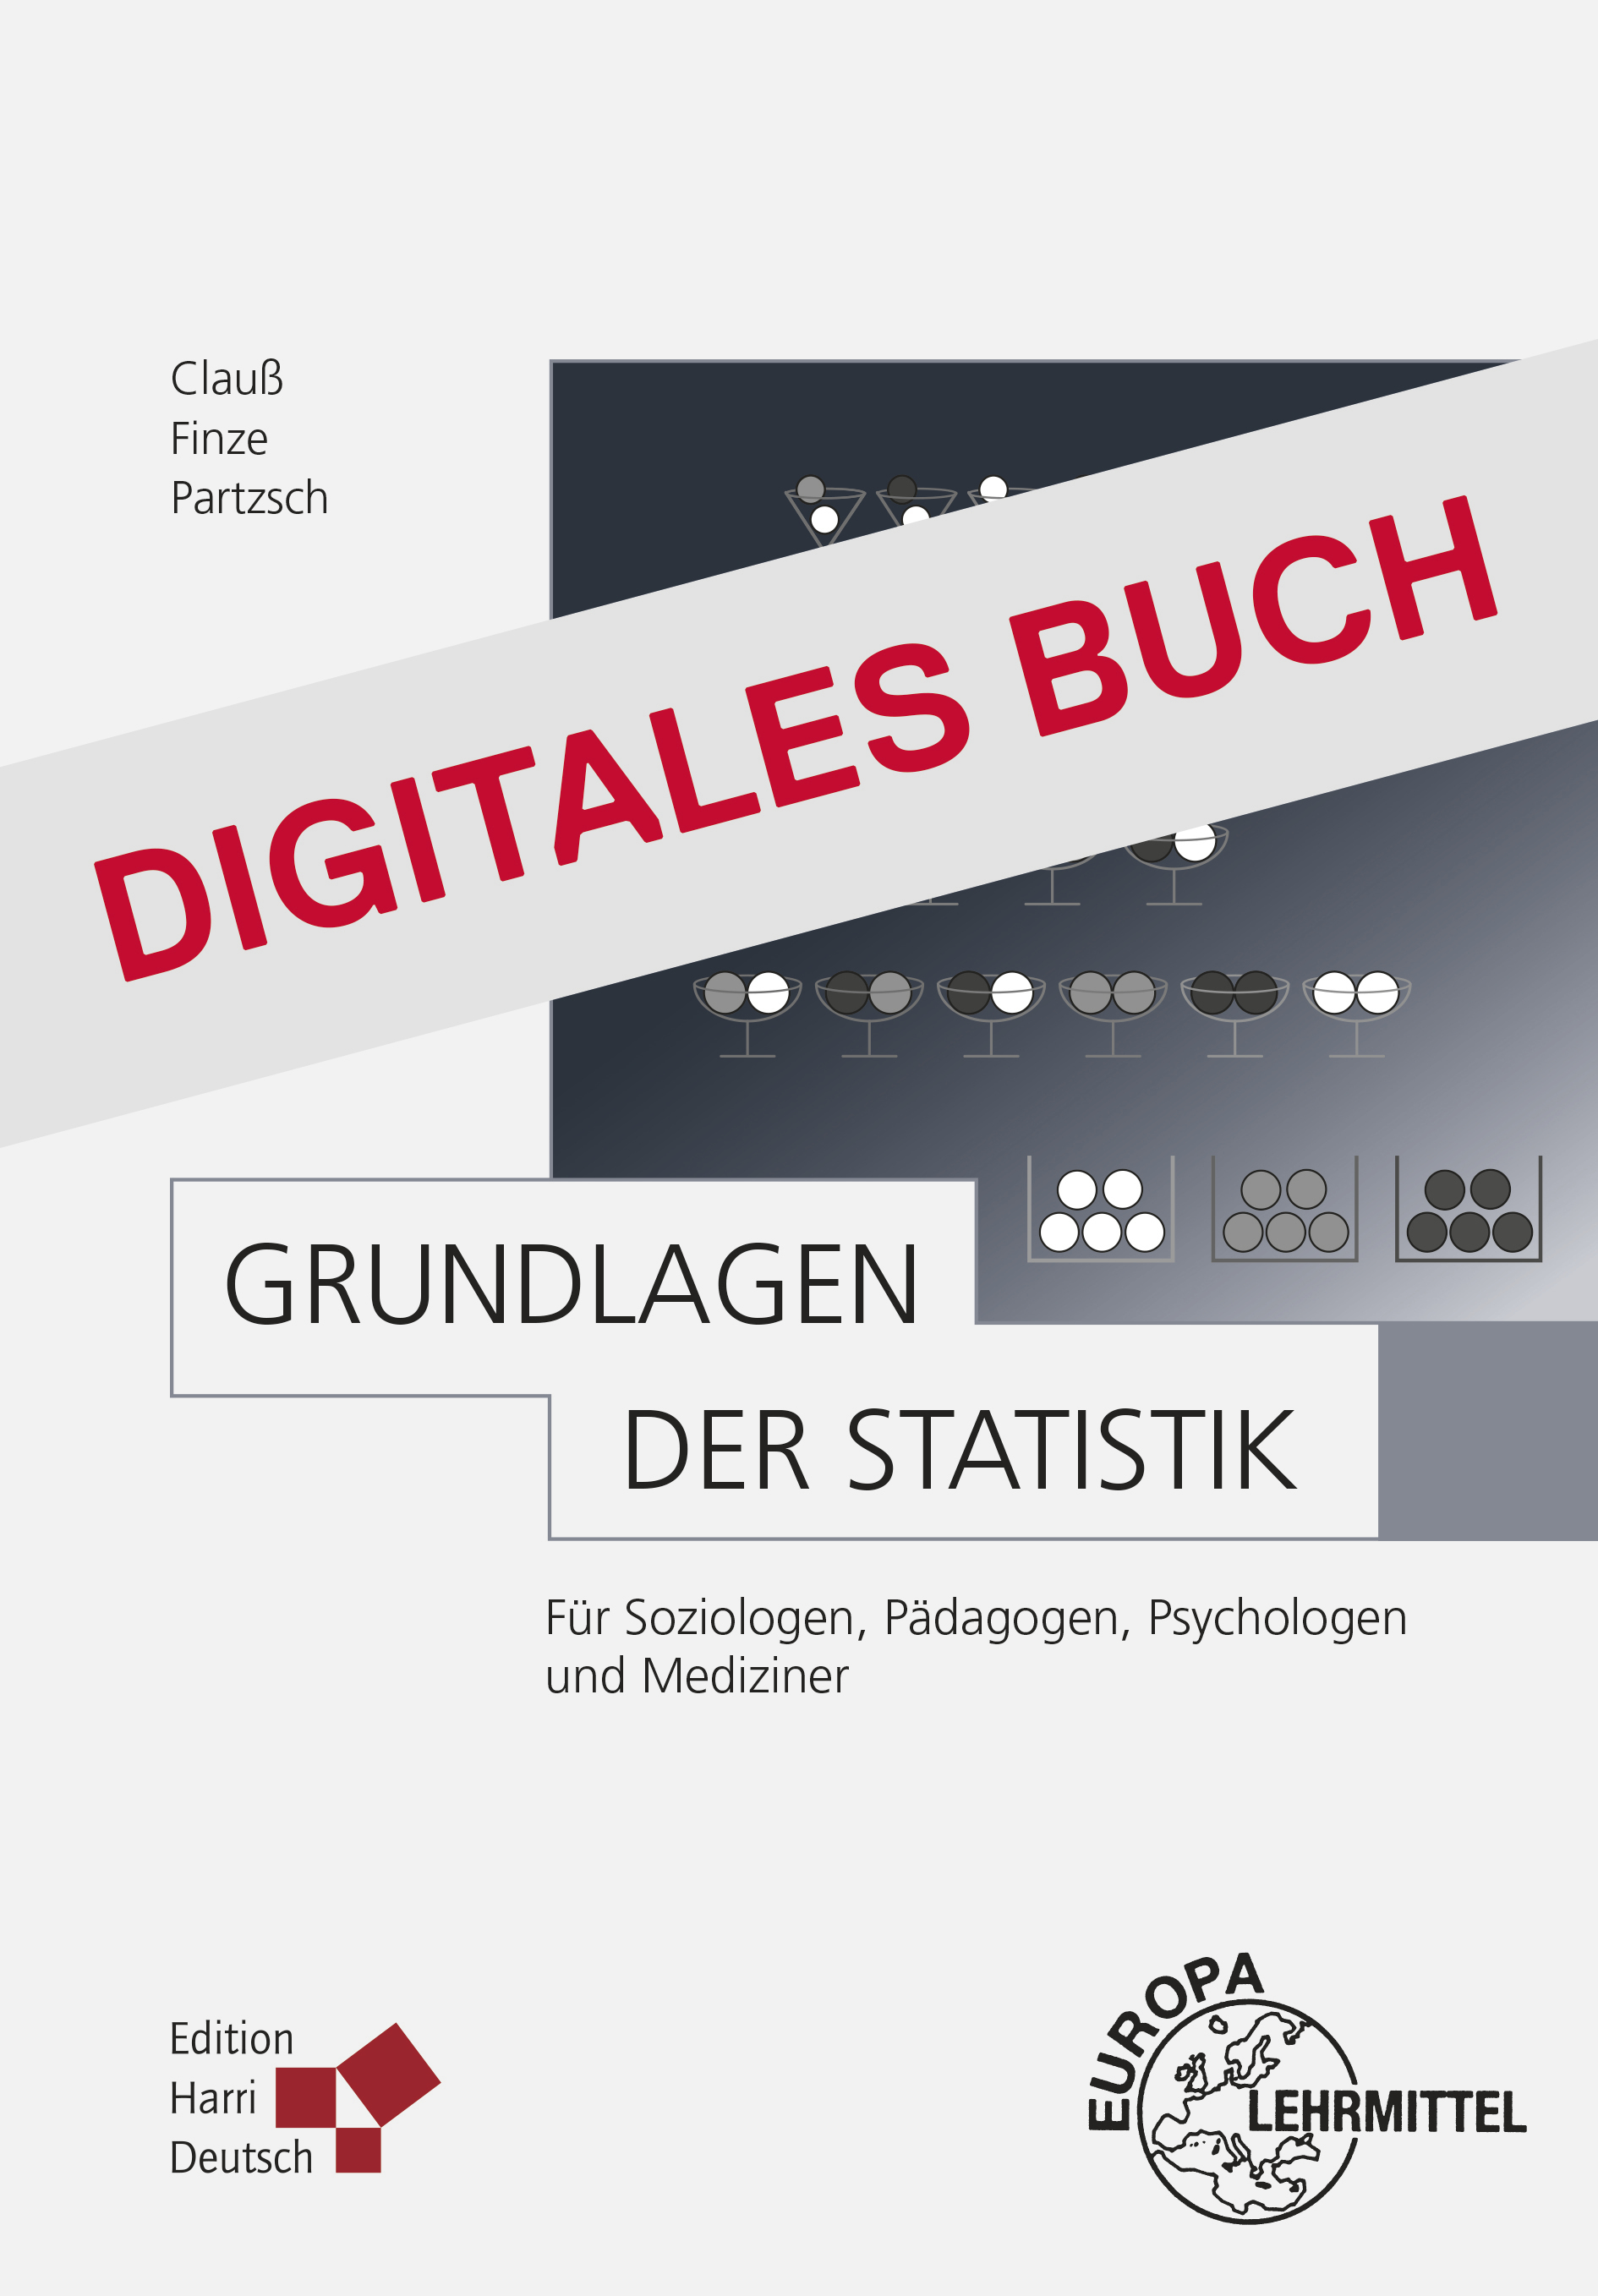 Grundlagen der Statistik - Digitales Buch